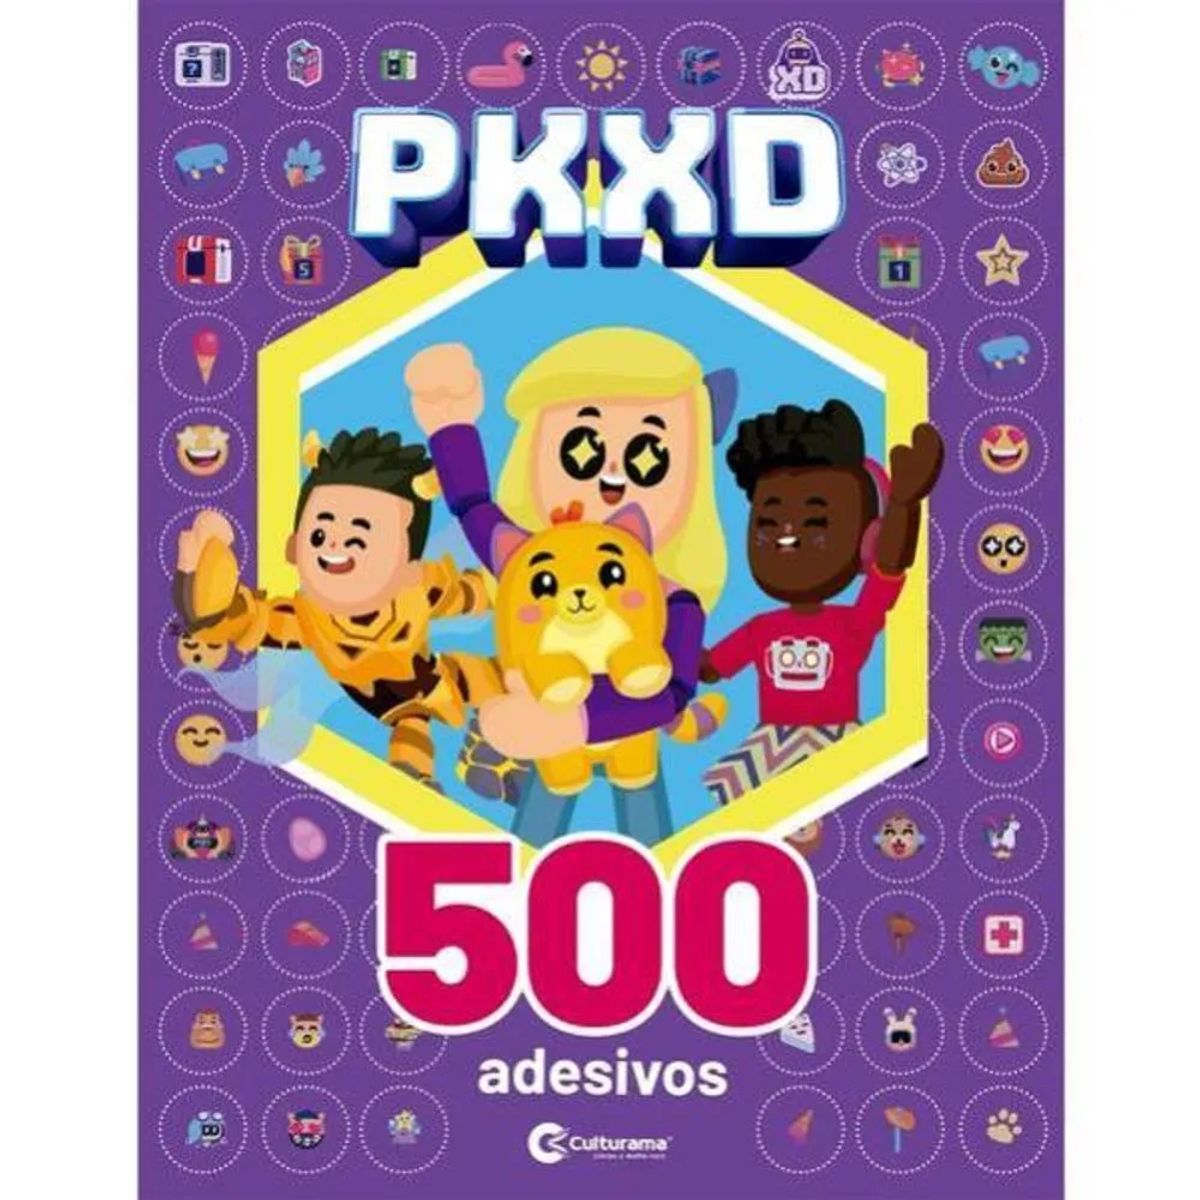 Kit Culturama PKXD com 500 Adesivos